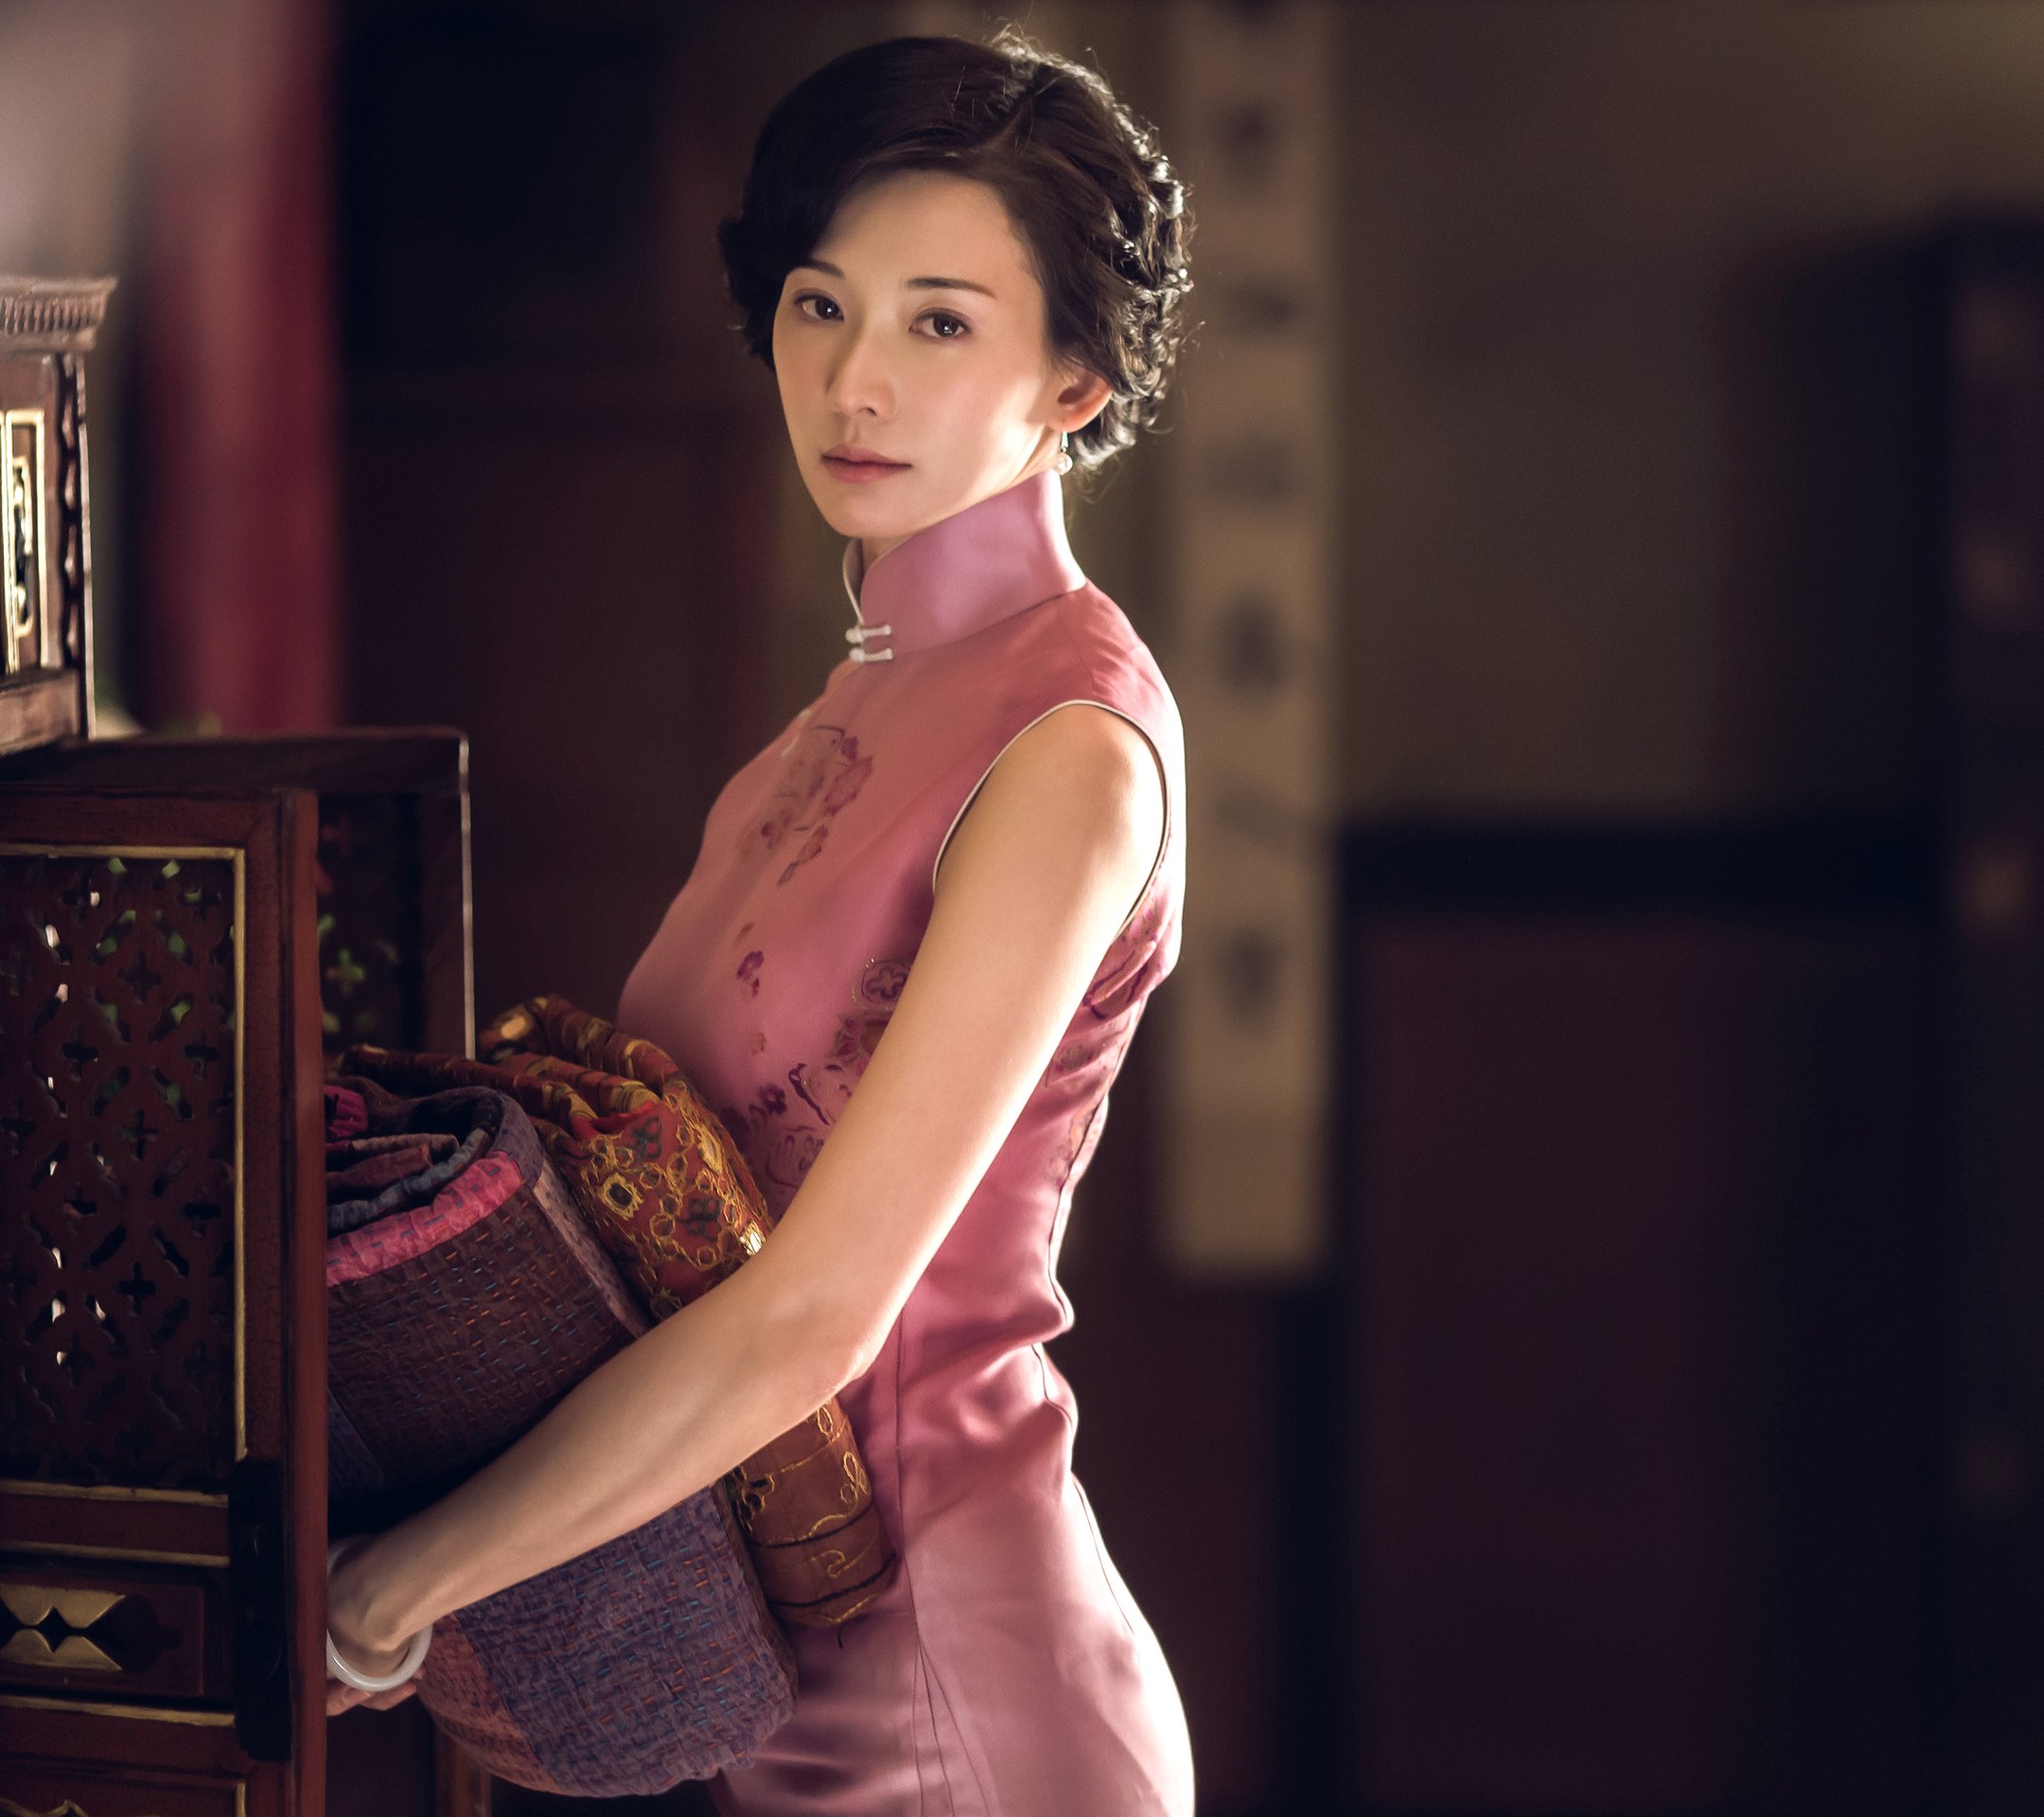 好喜欢《道士下山》里的林志玲,旗袍衬托魅力无限